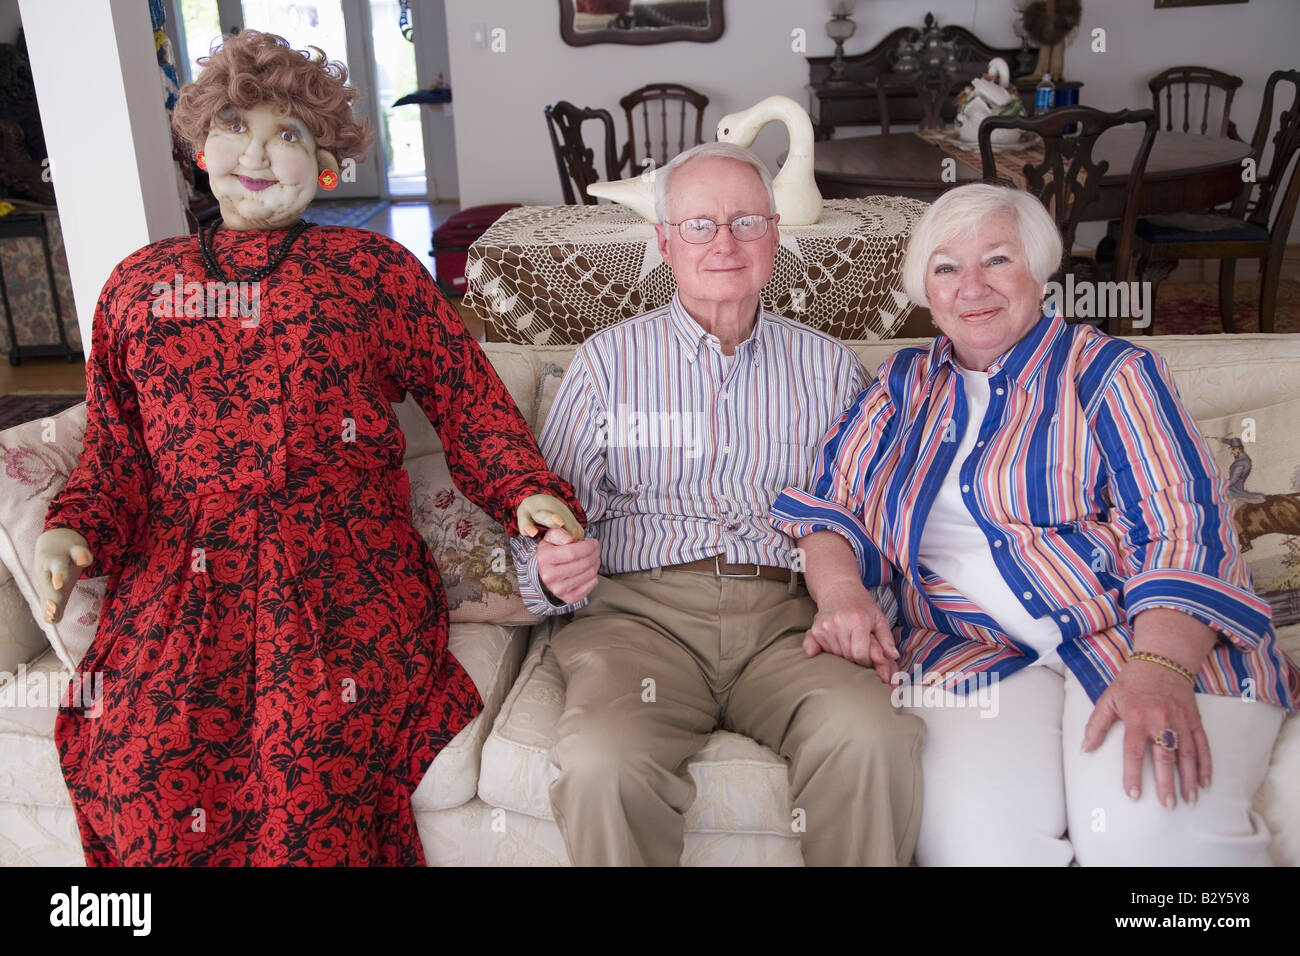 Jack et Lynn Sohm, deux personnes âgées avec poupée grandeur nature posant sur la table, à Annapolis, Maryland Banque D'Images